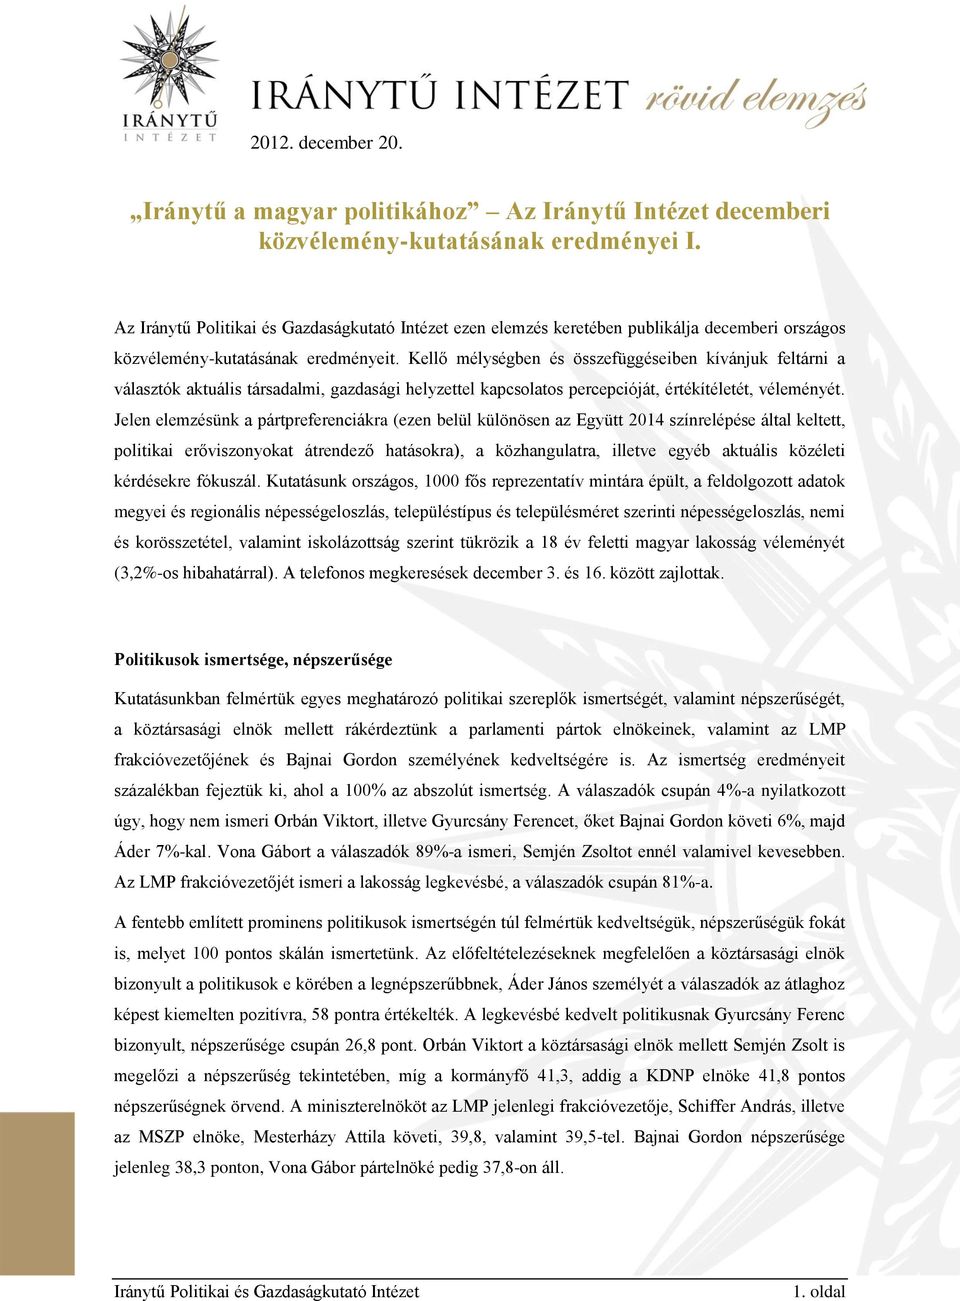 Iránytű a magyar politikához Az Iránytű Intézet decemberi  közvélemény-kutatásának eredményei I. - PDF Free Download